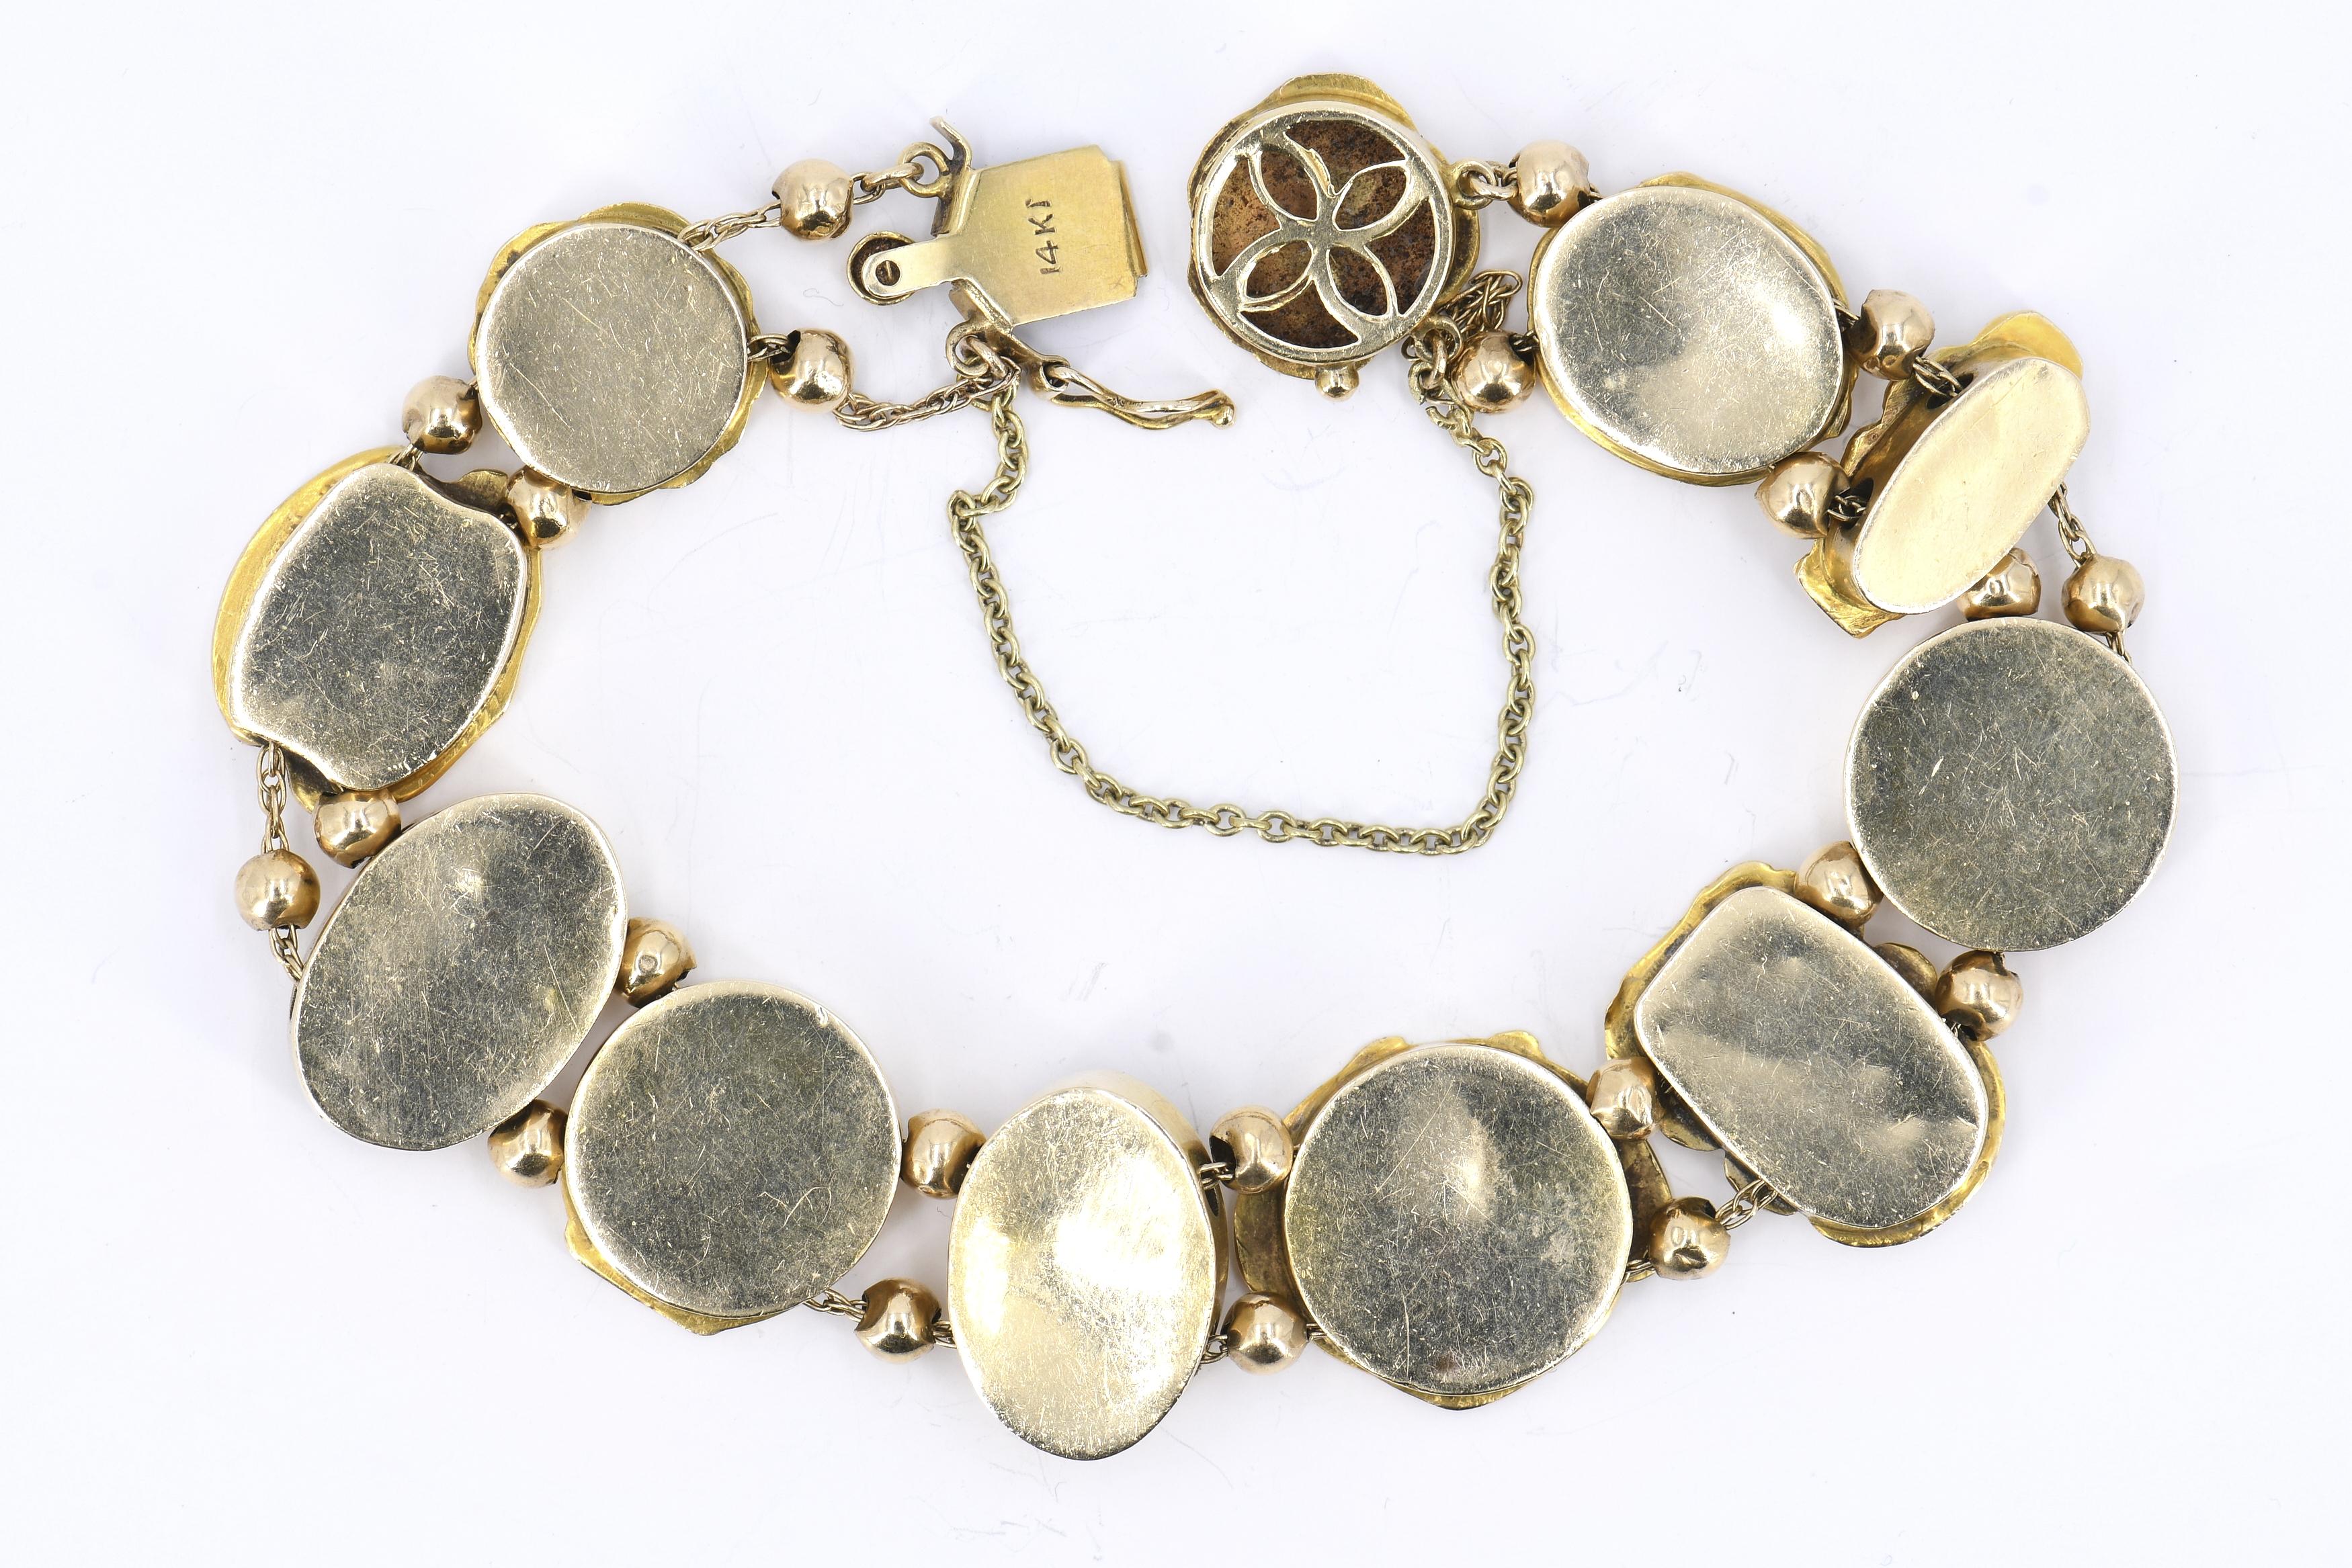 Art-Nouveau-Set: Bracelet and Ear Clip-Ons - Image 5 of 5